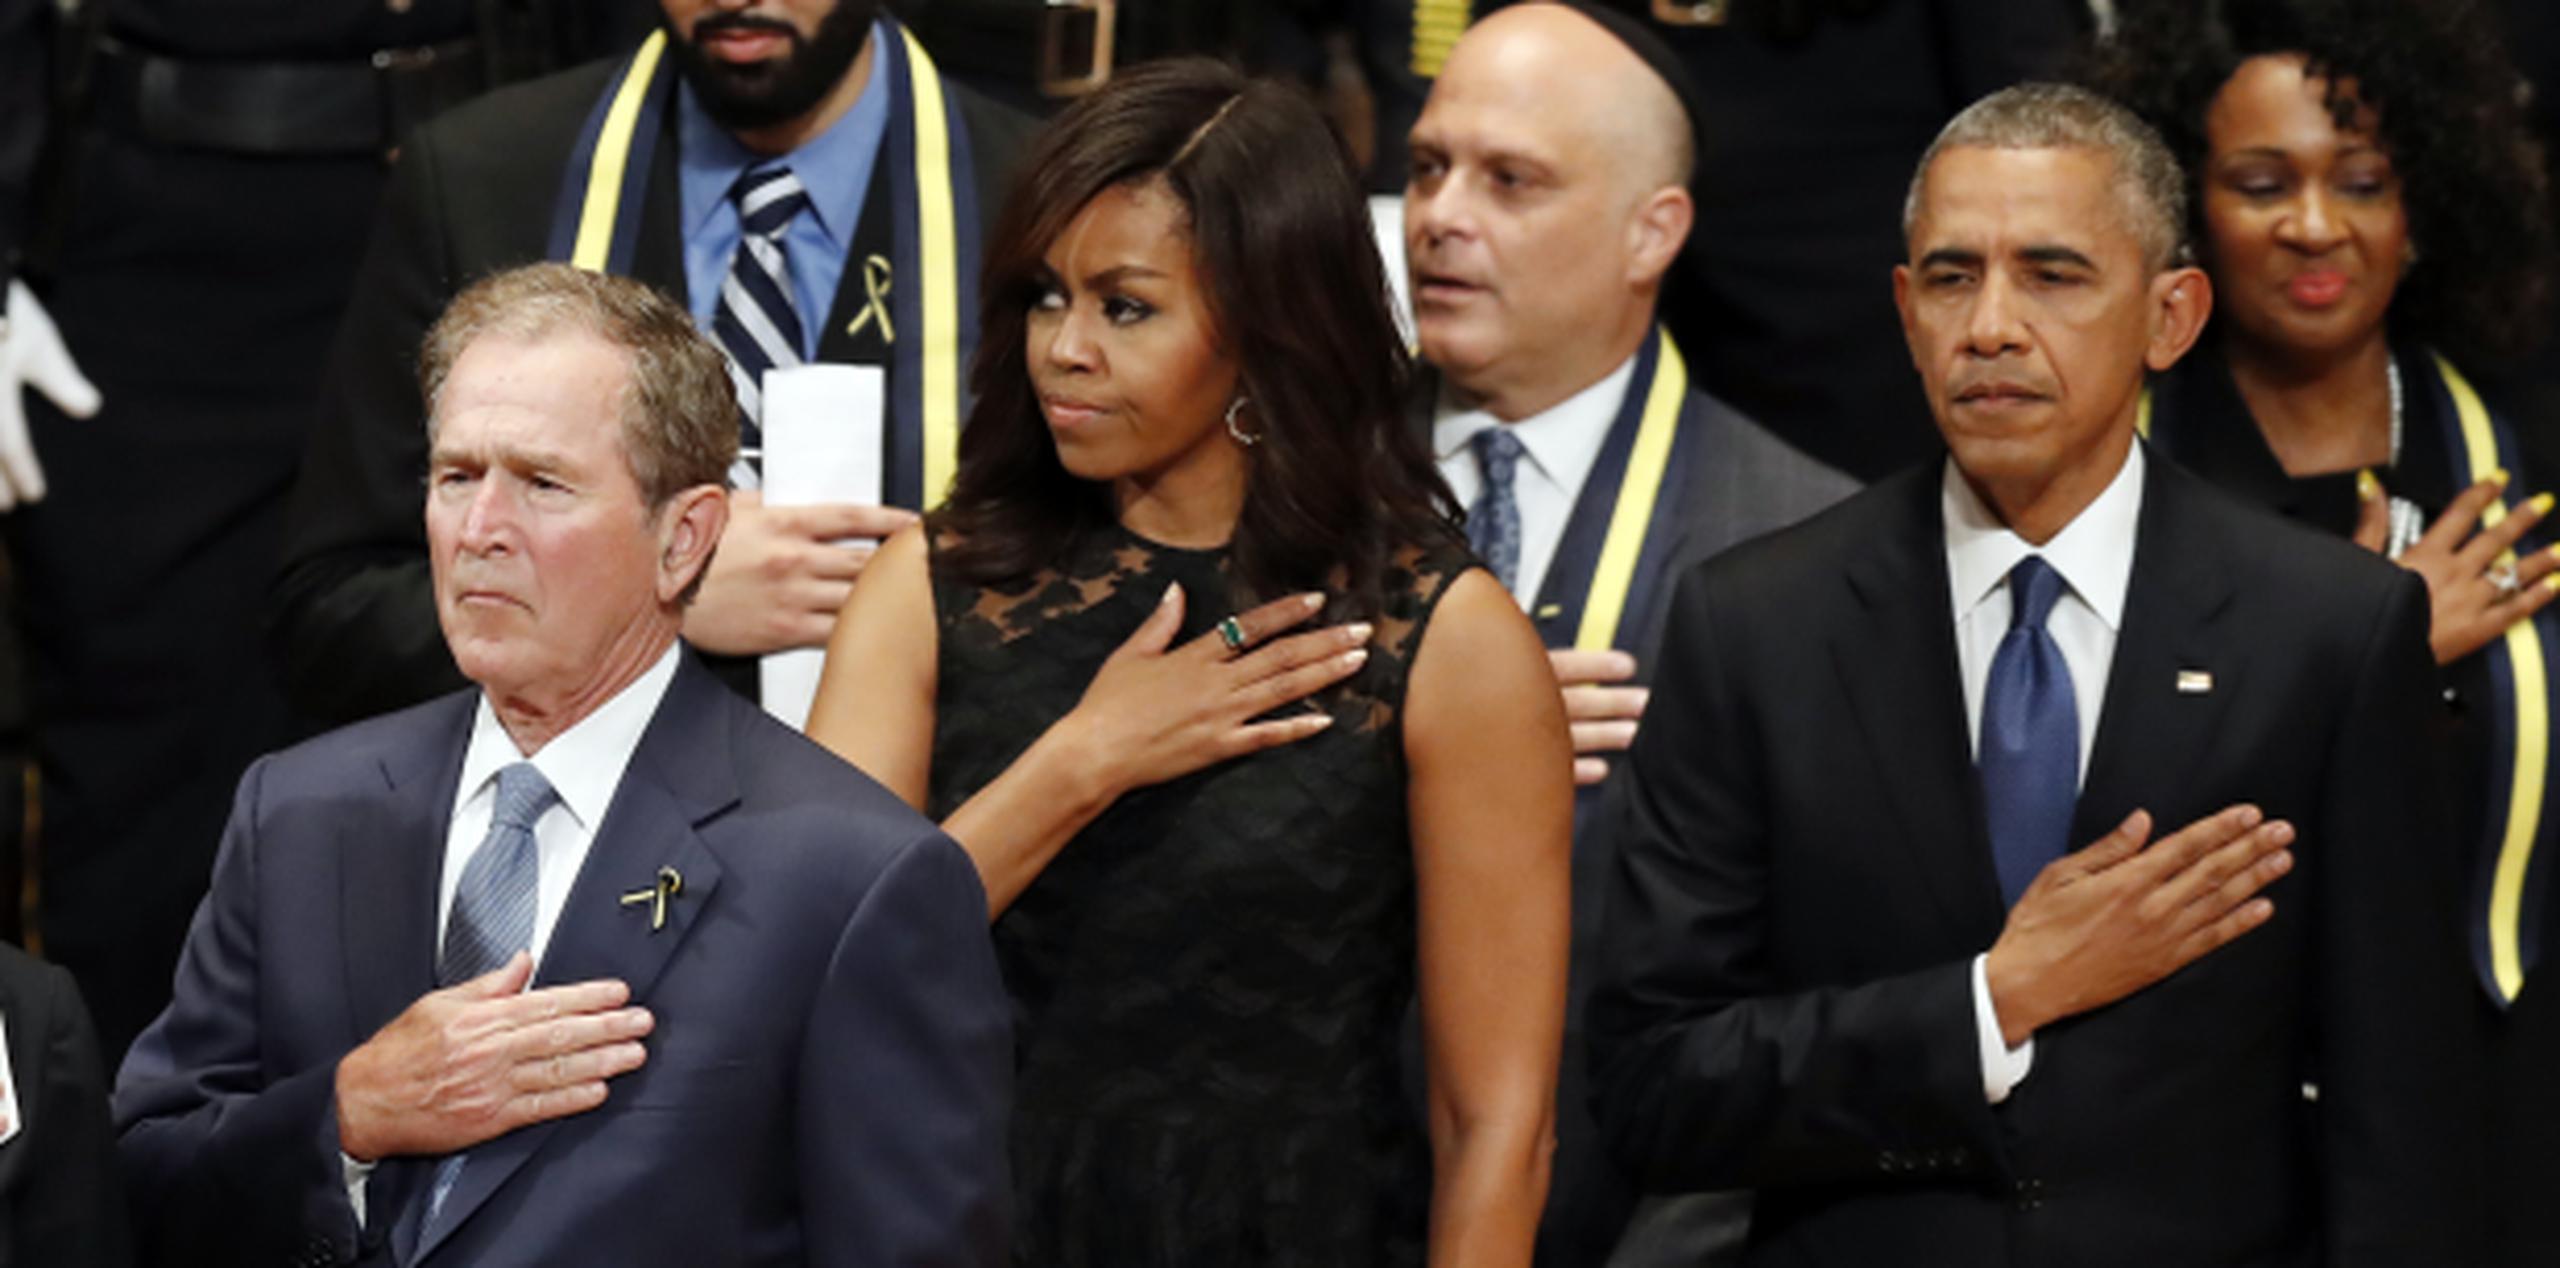 Obama durante la ceremonia junto a Michelle Obama y George W. Bush. (Prensa Asociada)